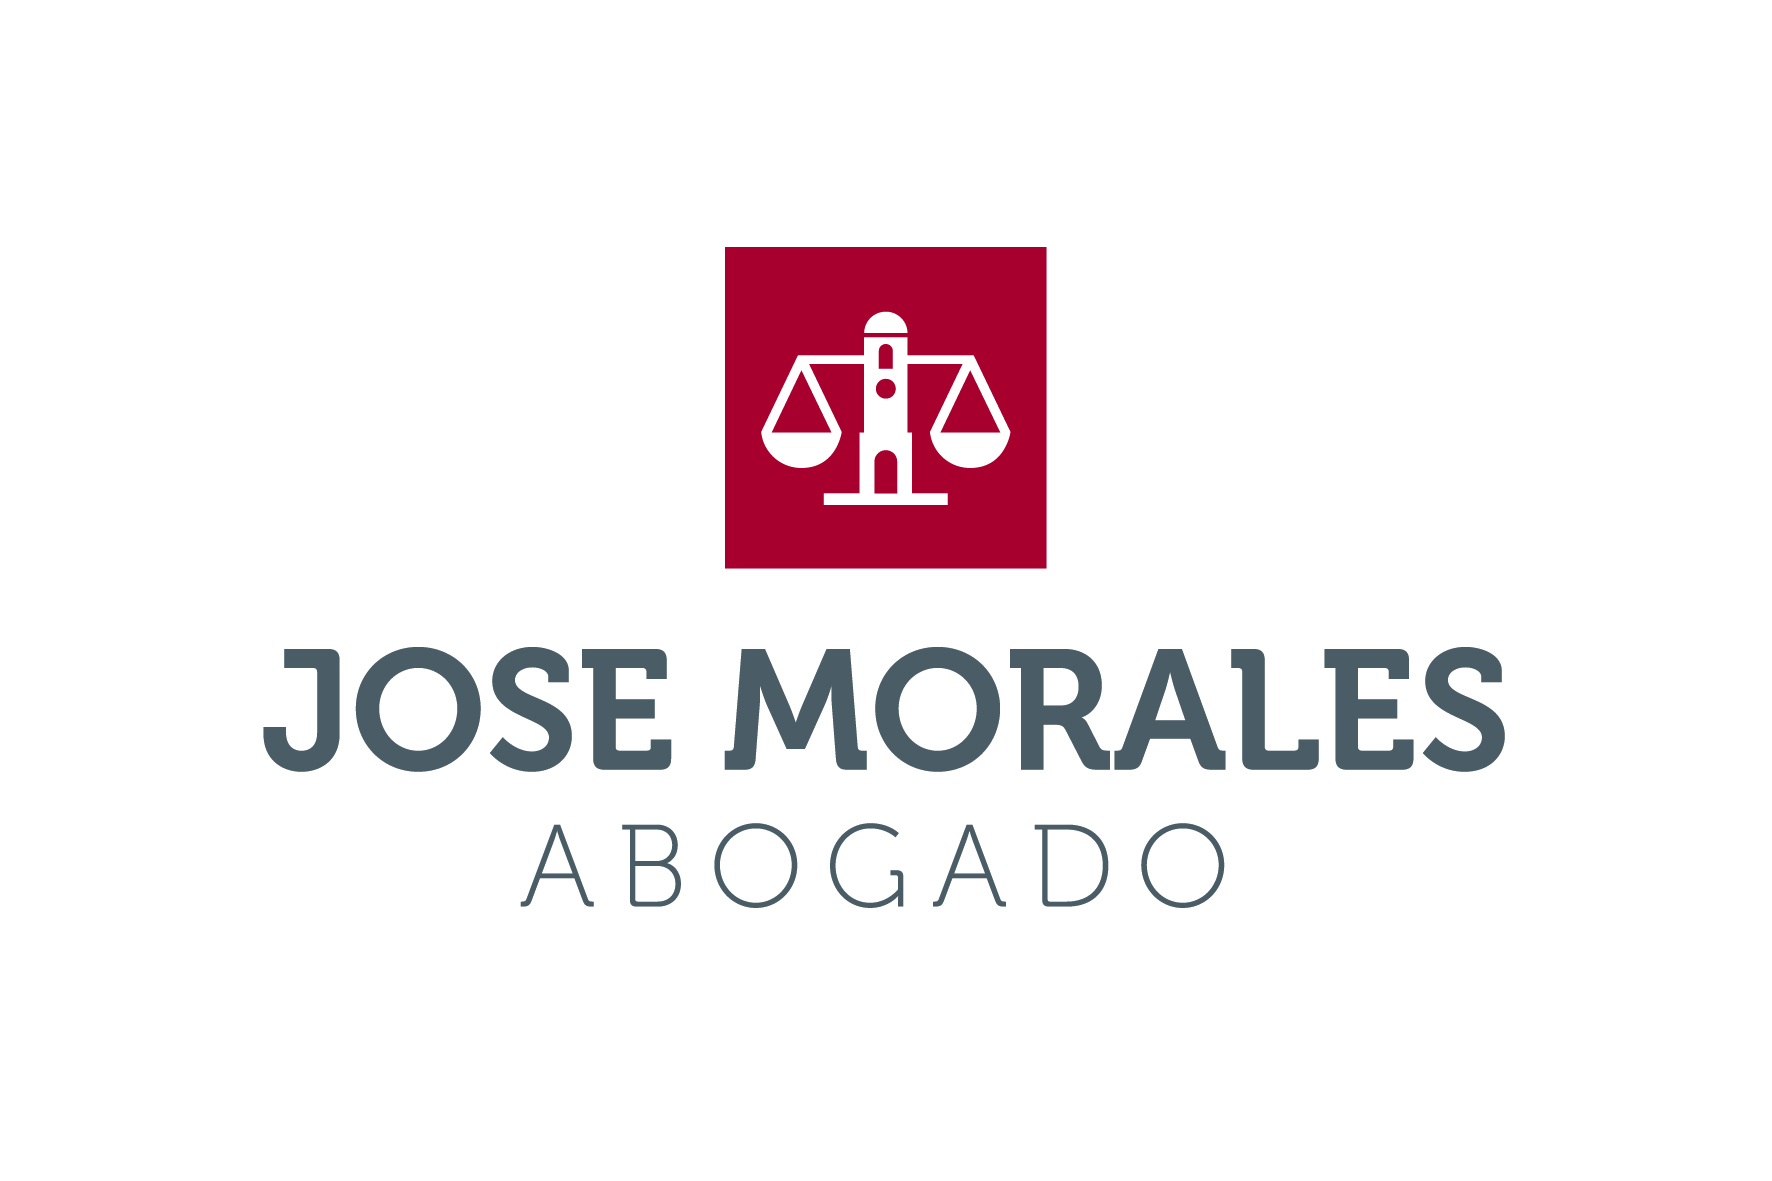 JOSE MORALES ABOGADO